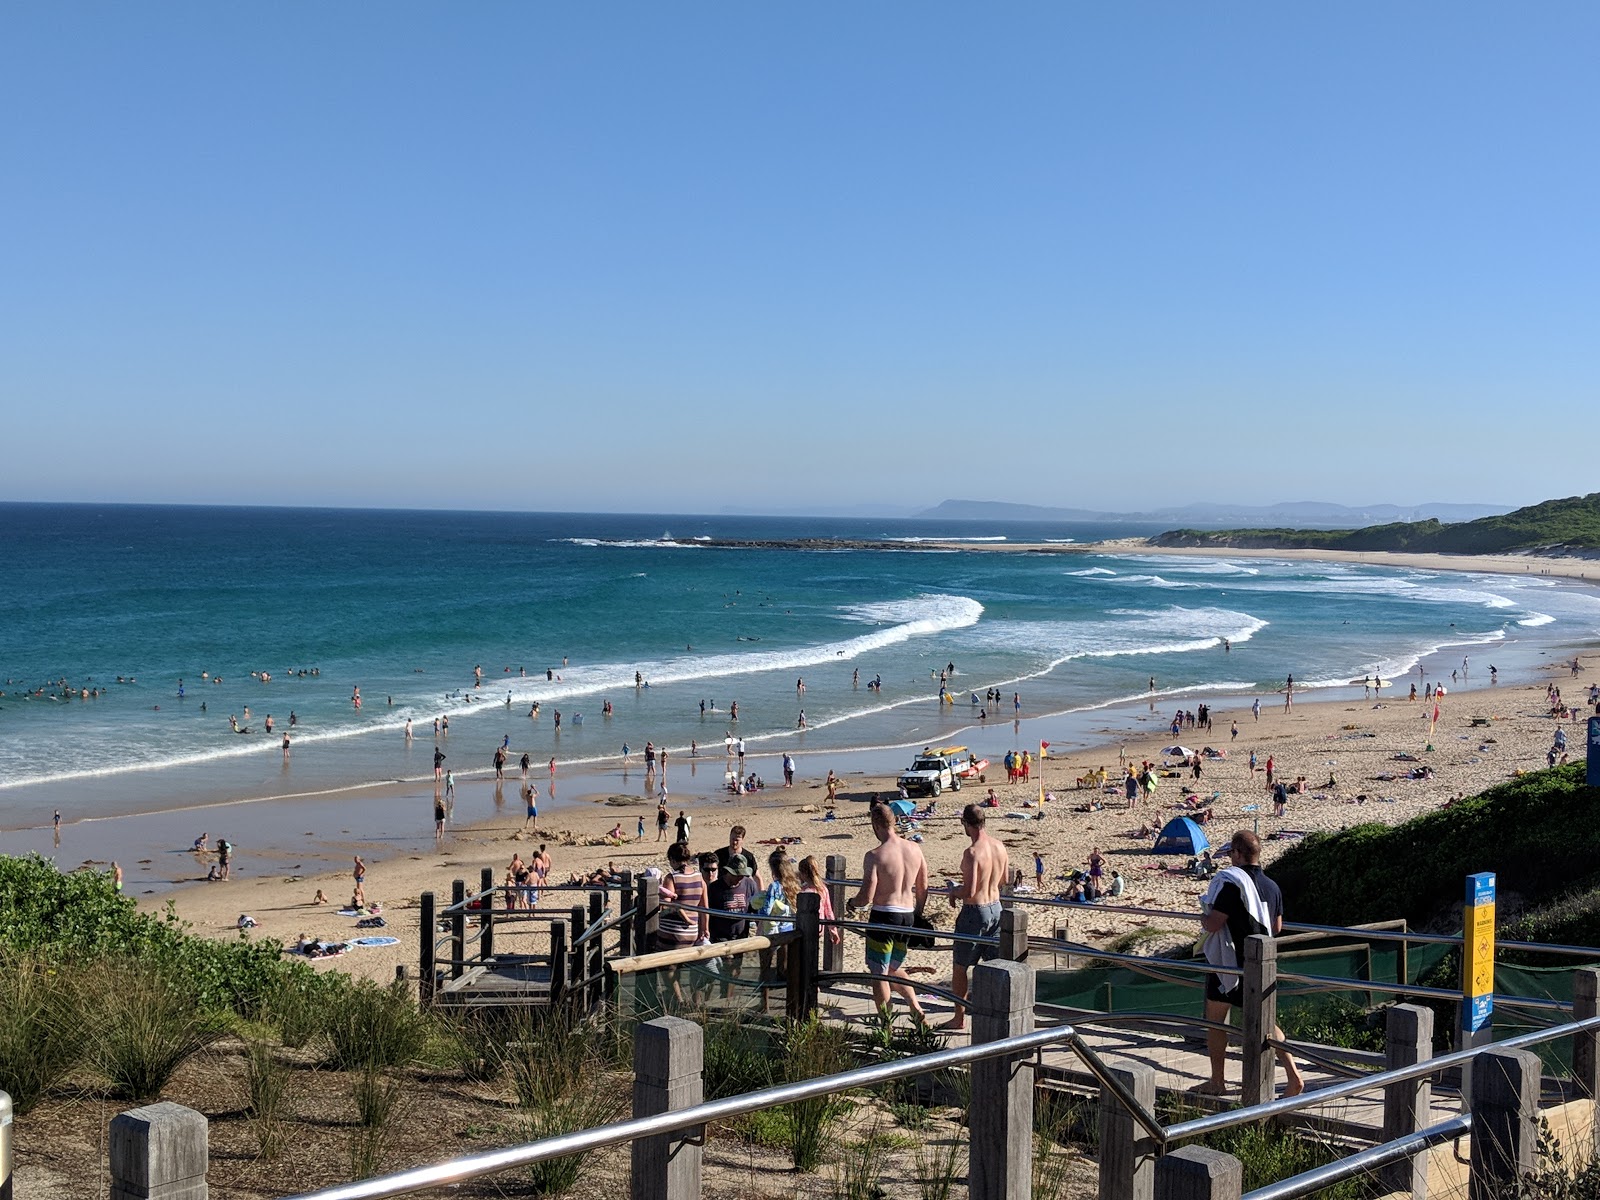 Fotografie cu Soldiers Beach - locul popular printre cunoscătorii de relaxare